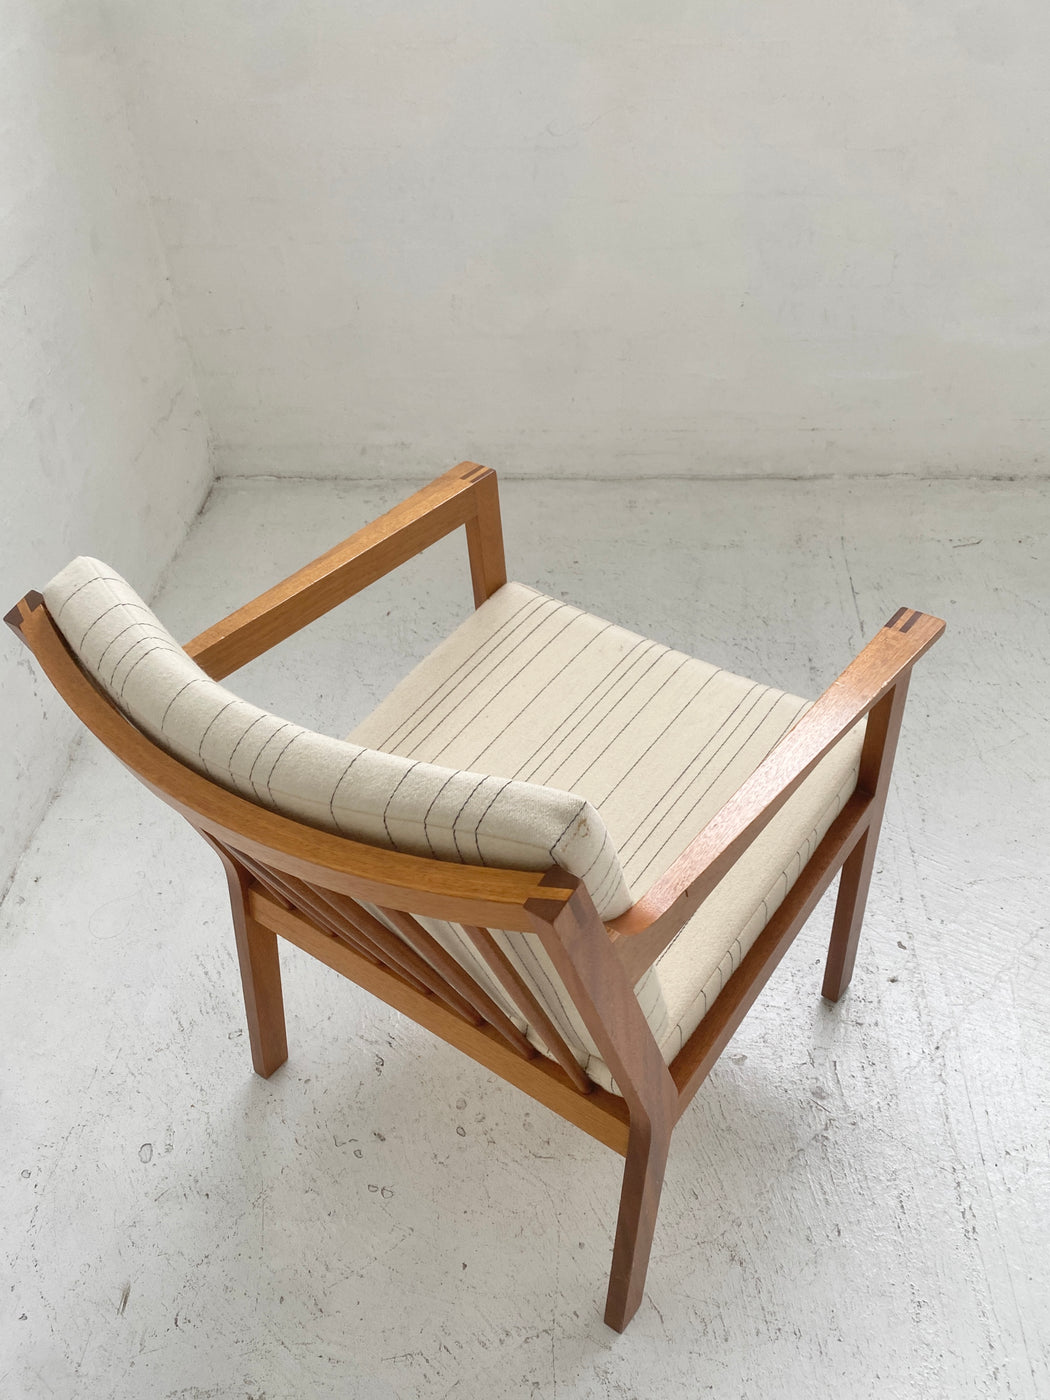 Christian Hvidt 'Model 450' Chair